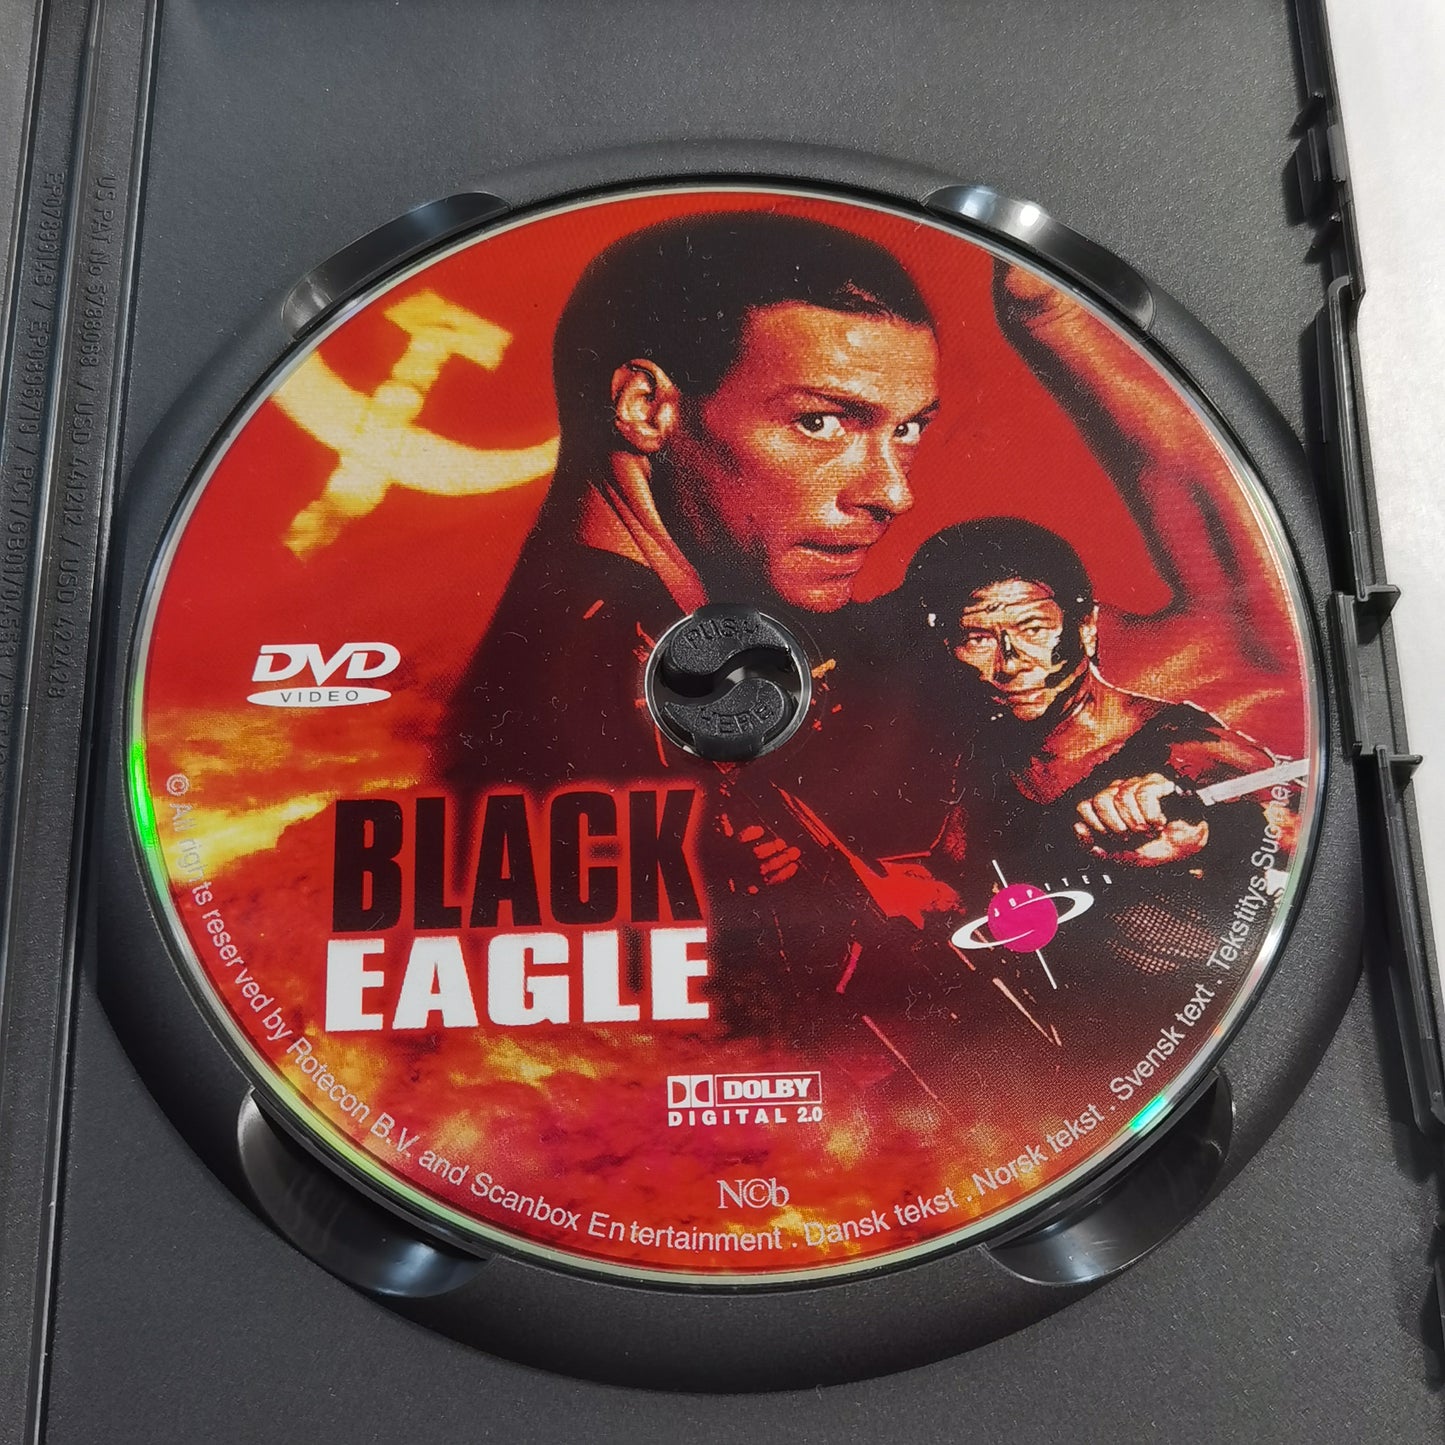 Black Eagle (1988) - DVD SE NO DK FI